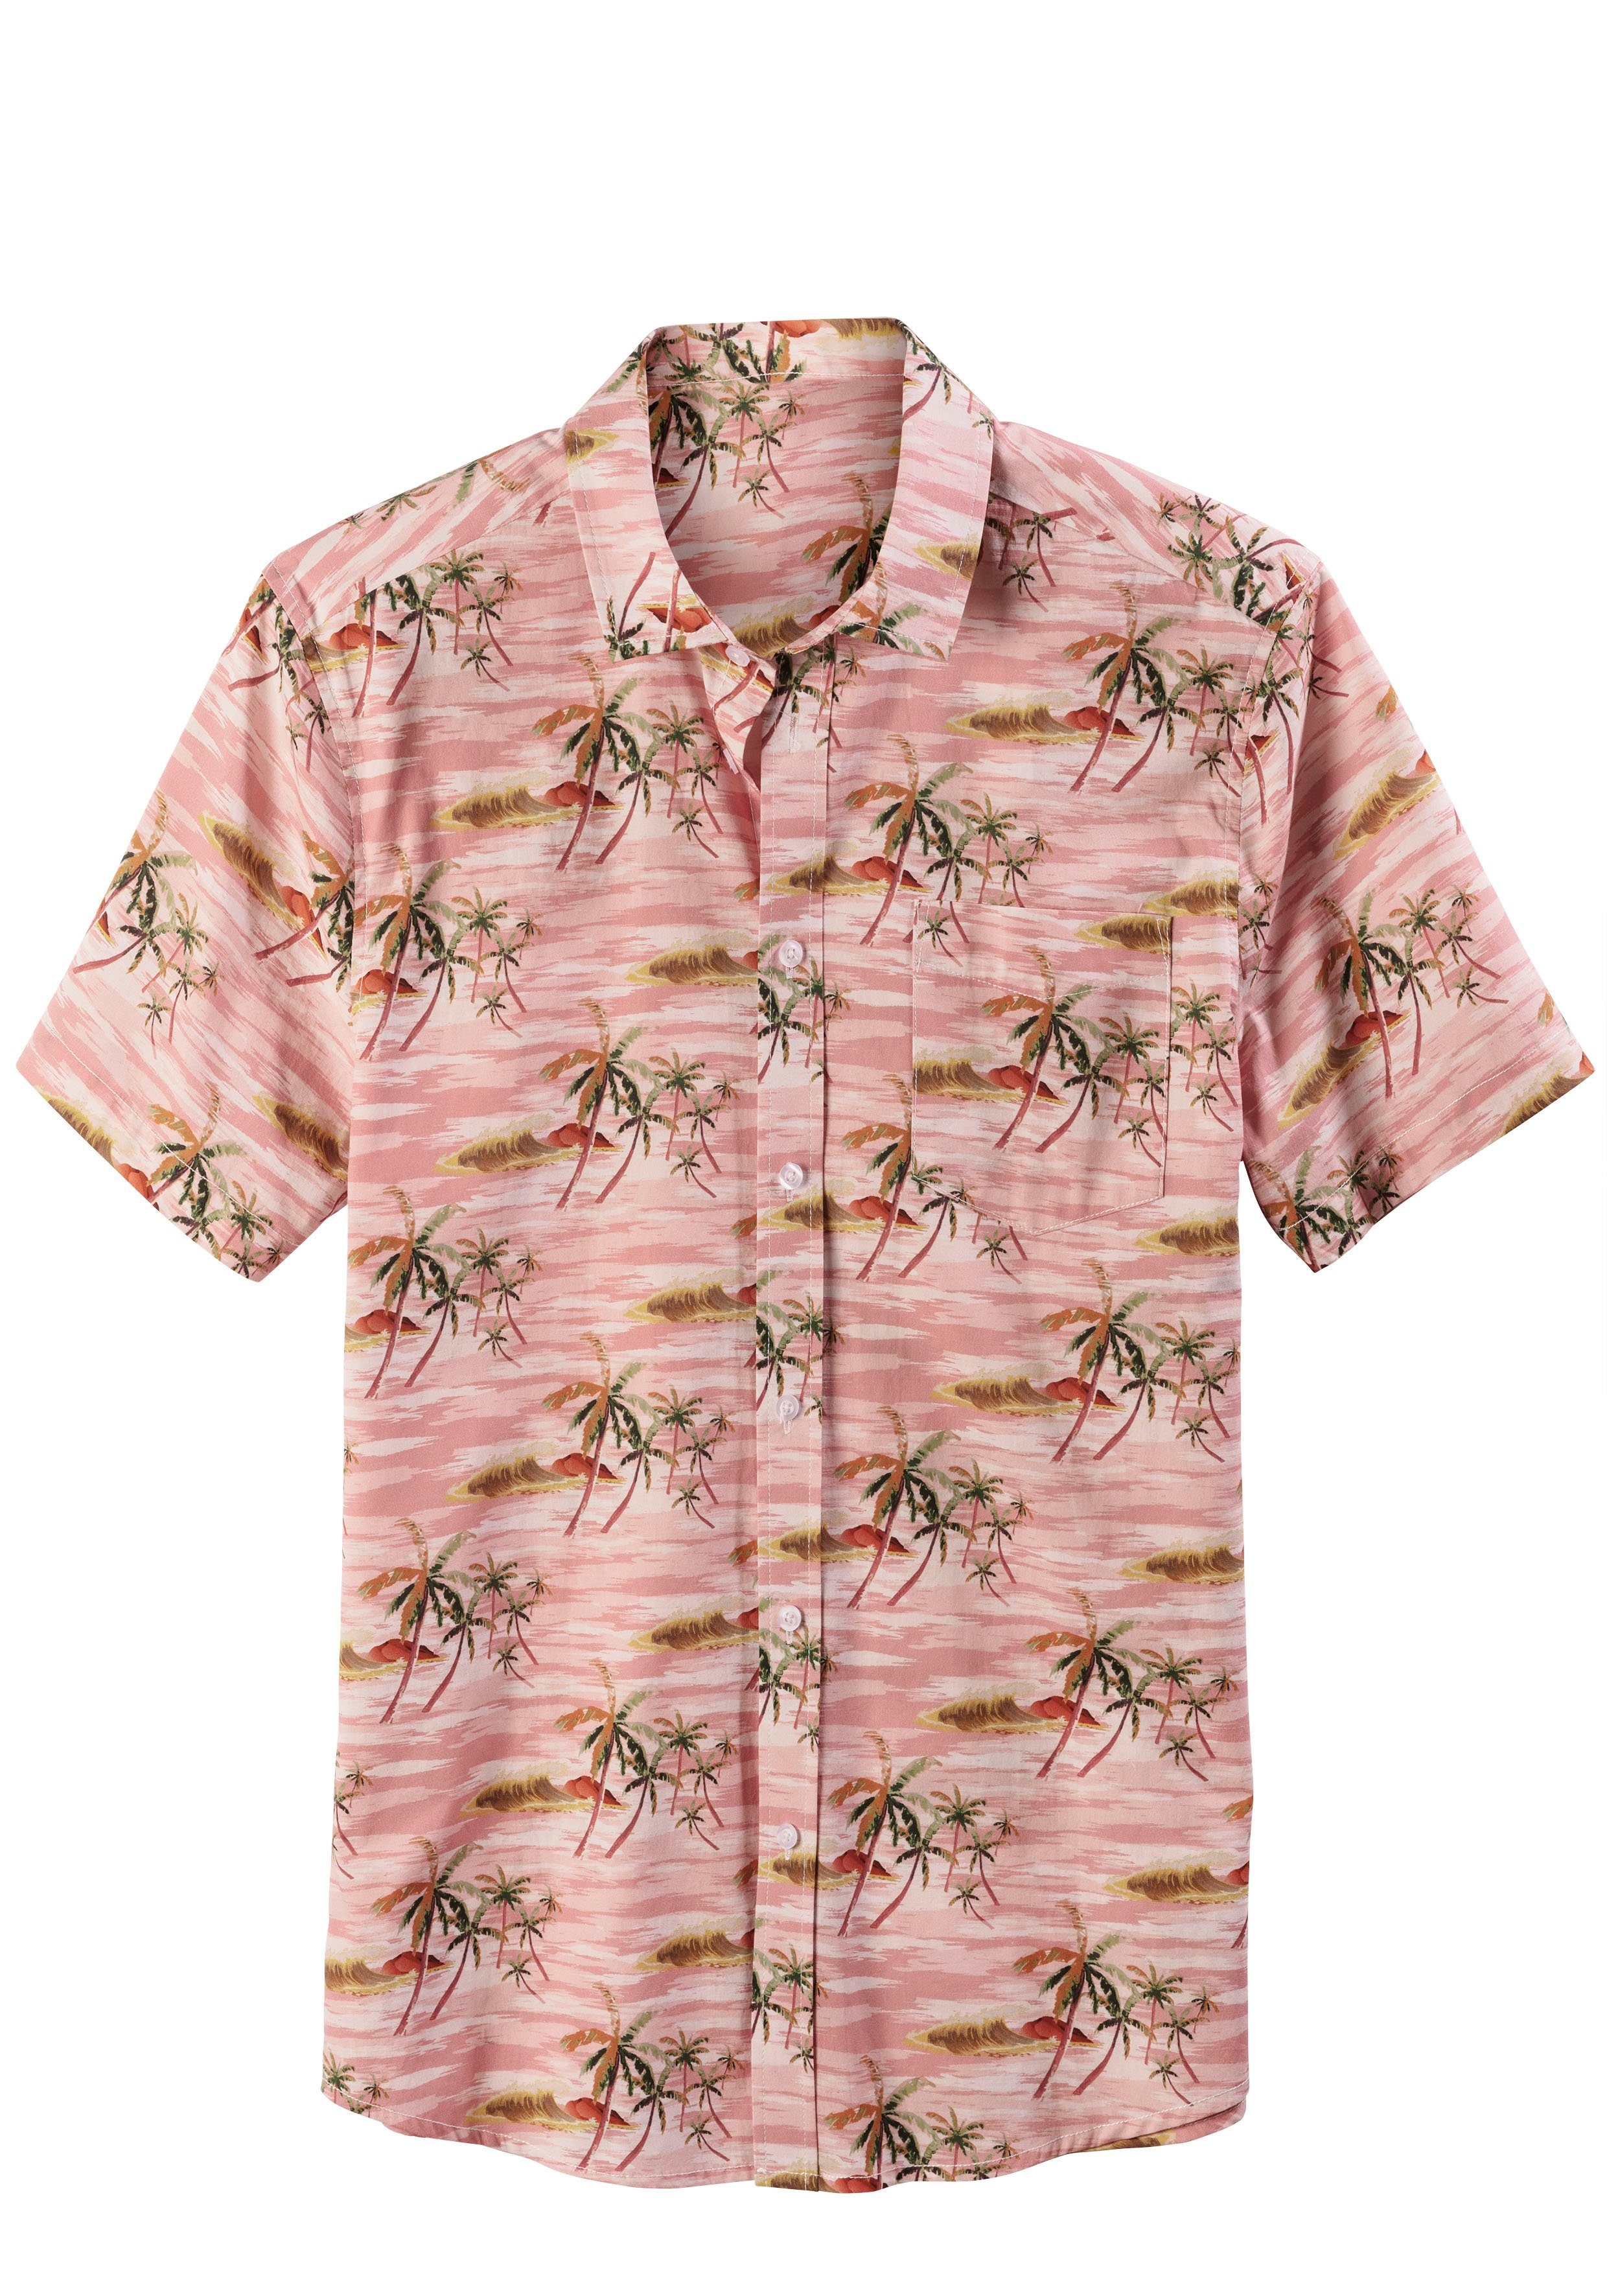 Beachtime Hawaiihemd mit coolem Palmenprint, rosa-bedruckt Strandmode